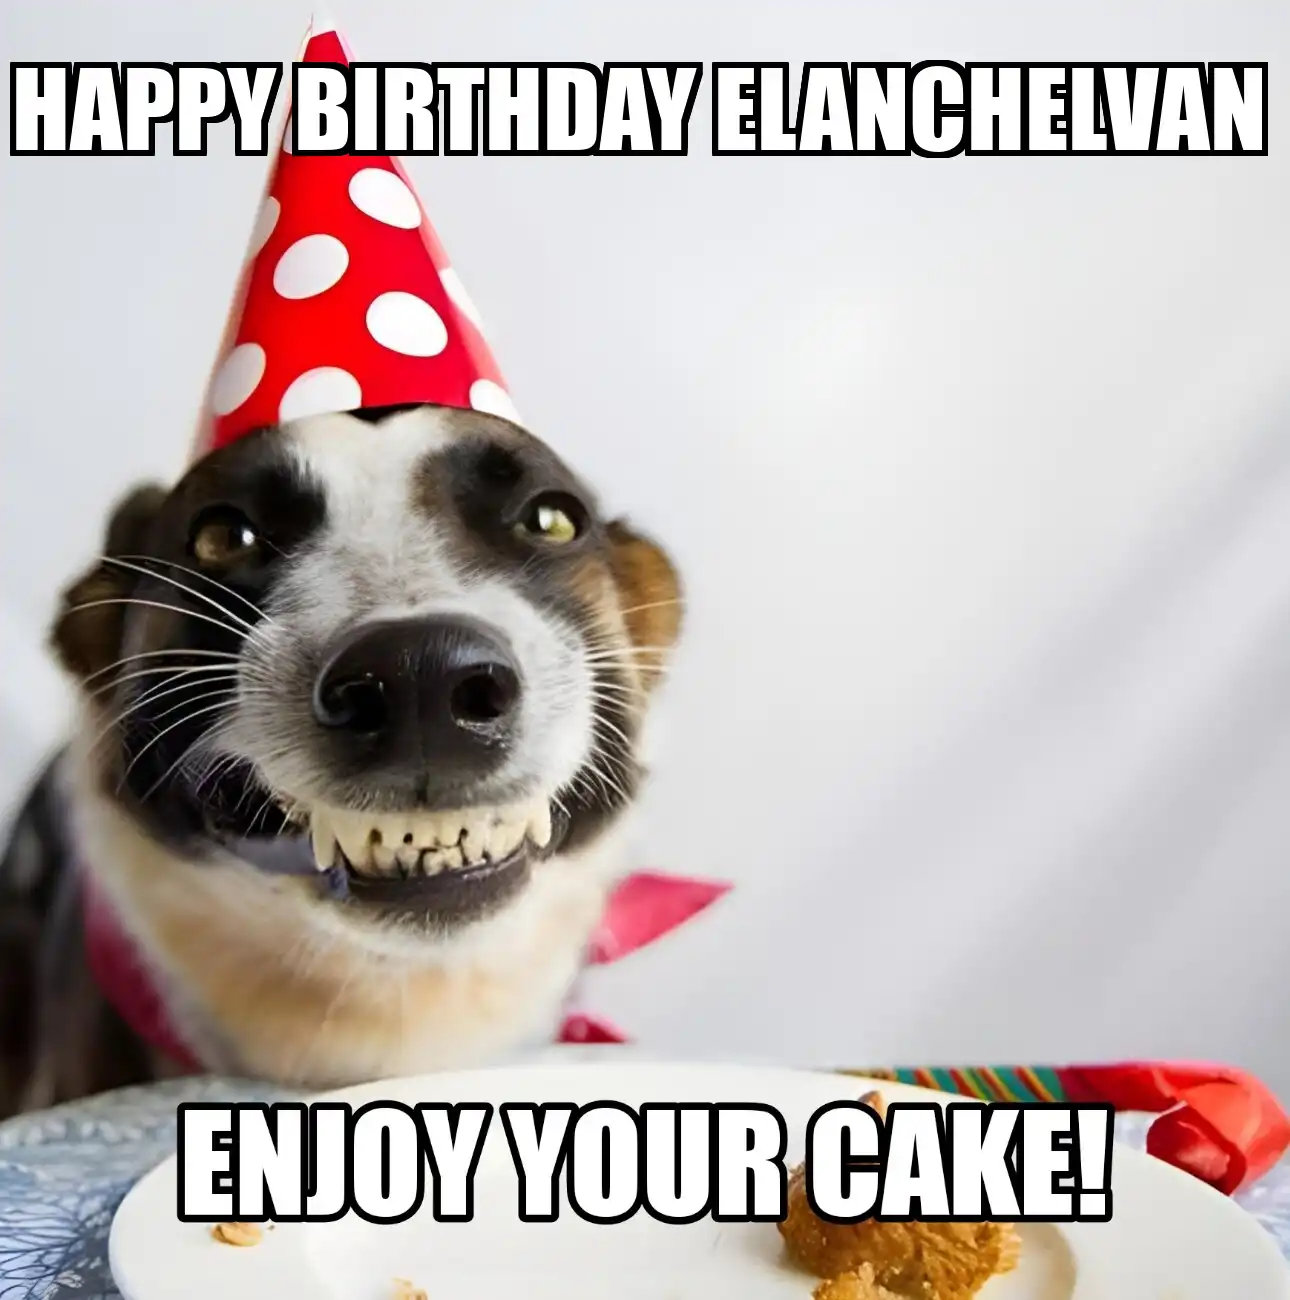 Happy Birthday Elanchelvan Enjoy Your Cake Dog Meme